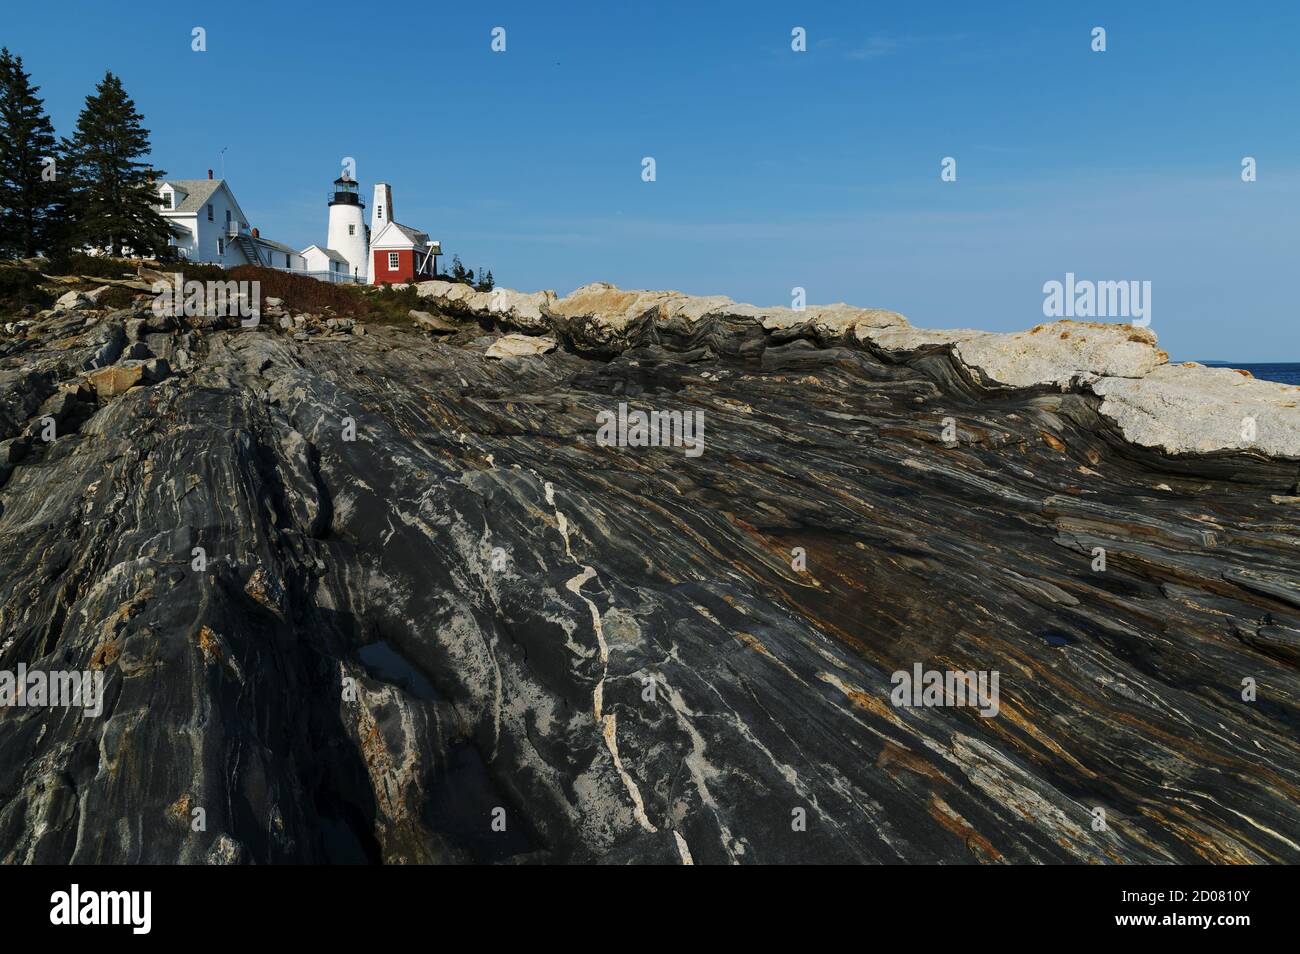 Il faro di Pemaquid Point, sulla costa centrale del Maine, si trova sulla cima di speciali formazioni rocciose metamorfiche che si innalzano dal mare. Foto Stock